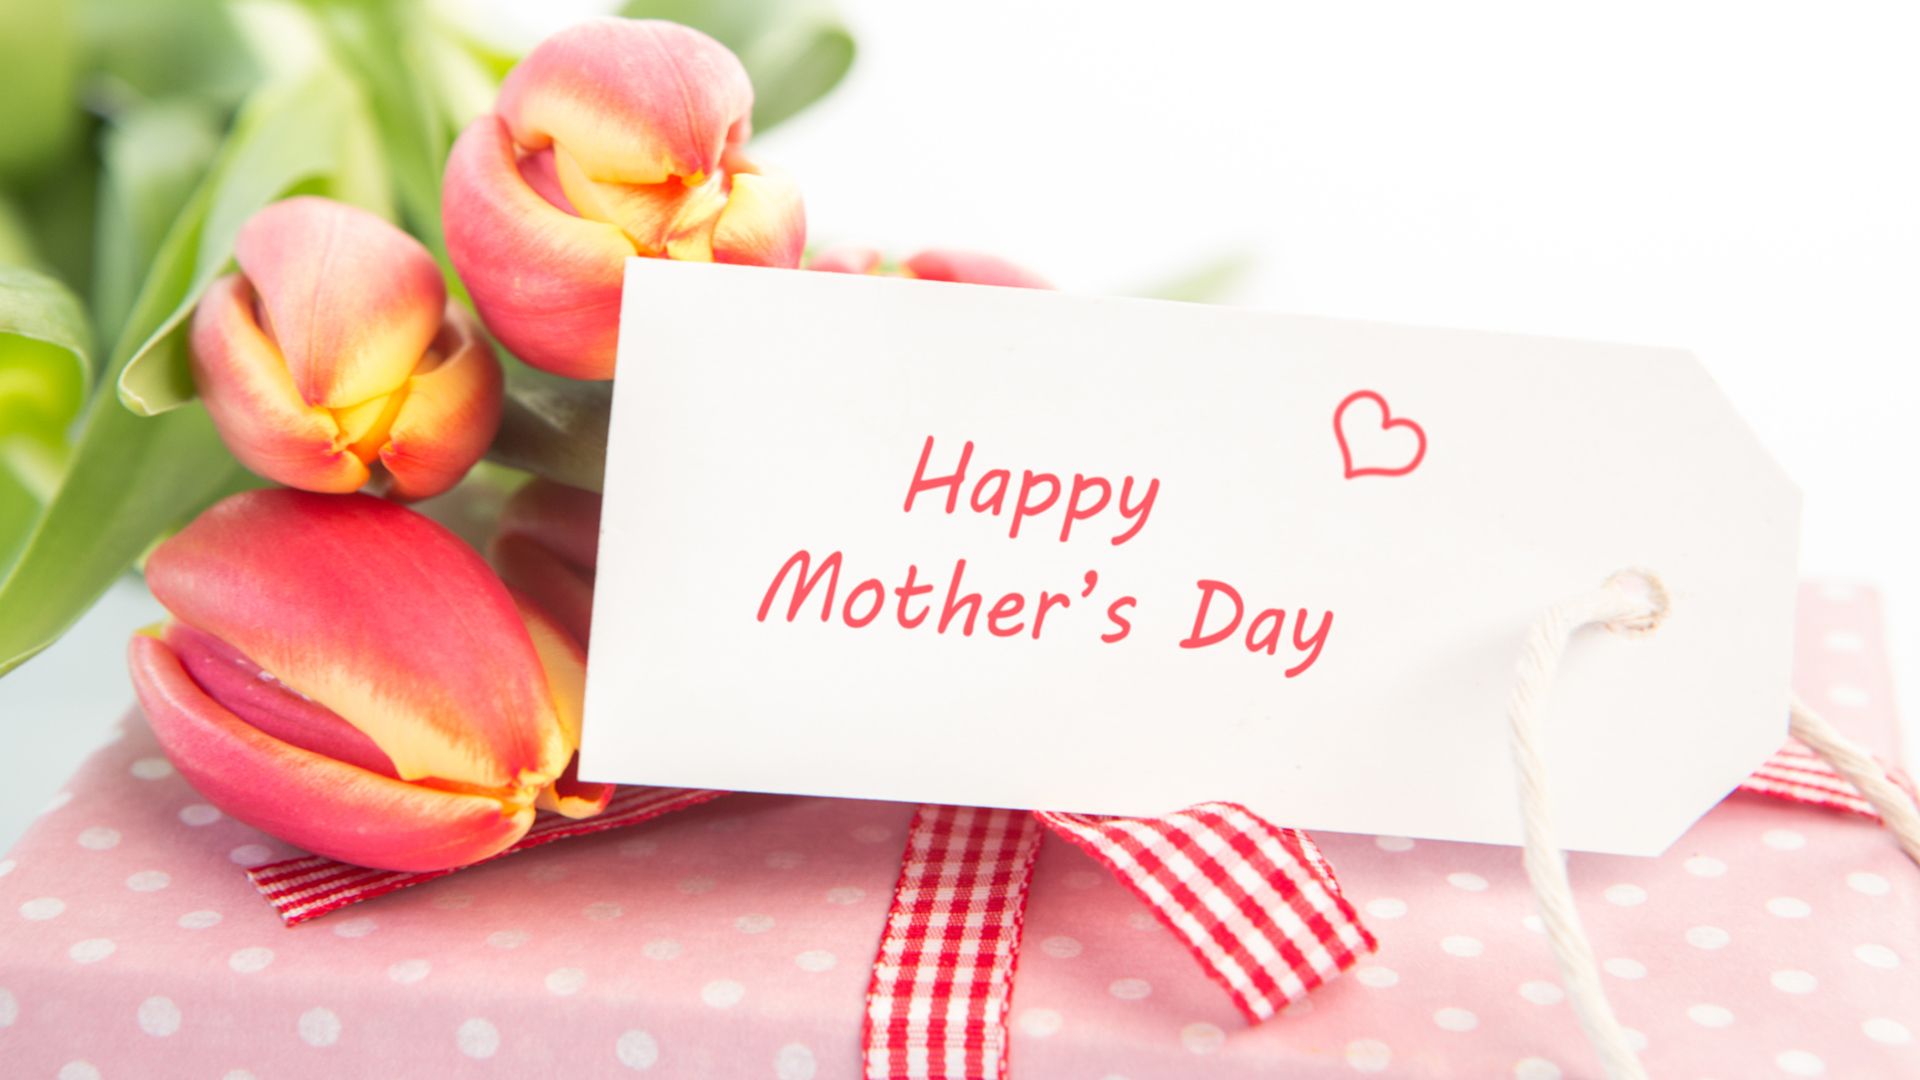 Happy Mother's Day HD Wallpapers 2019  PixelsTalk.Net